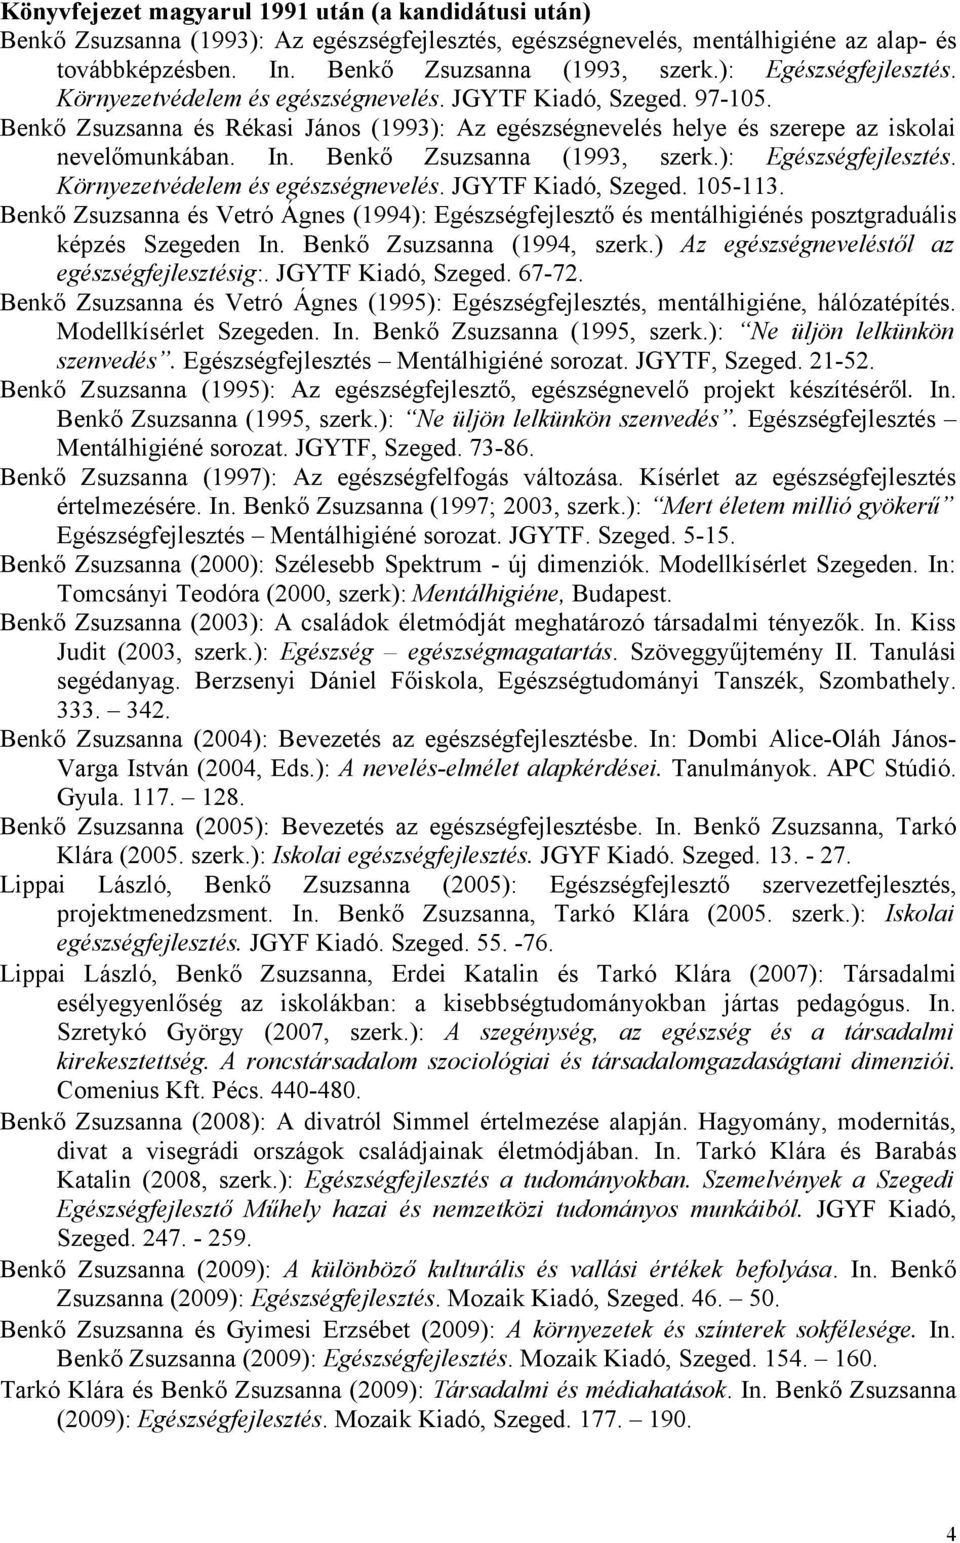 Benkő Zsuzsanna (1993, szerk.): Egészségfejlesztés. Környezetvédelem és egészségnevelés. JGYTF Kiadó, Szeged. 105-113.